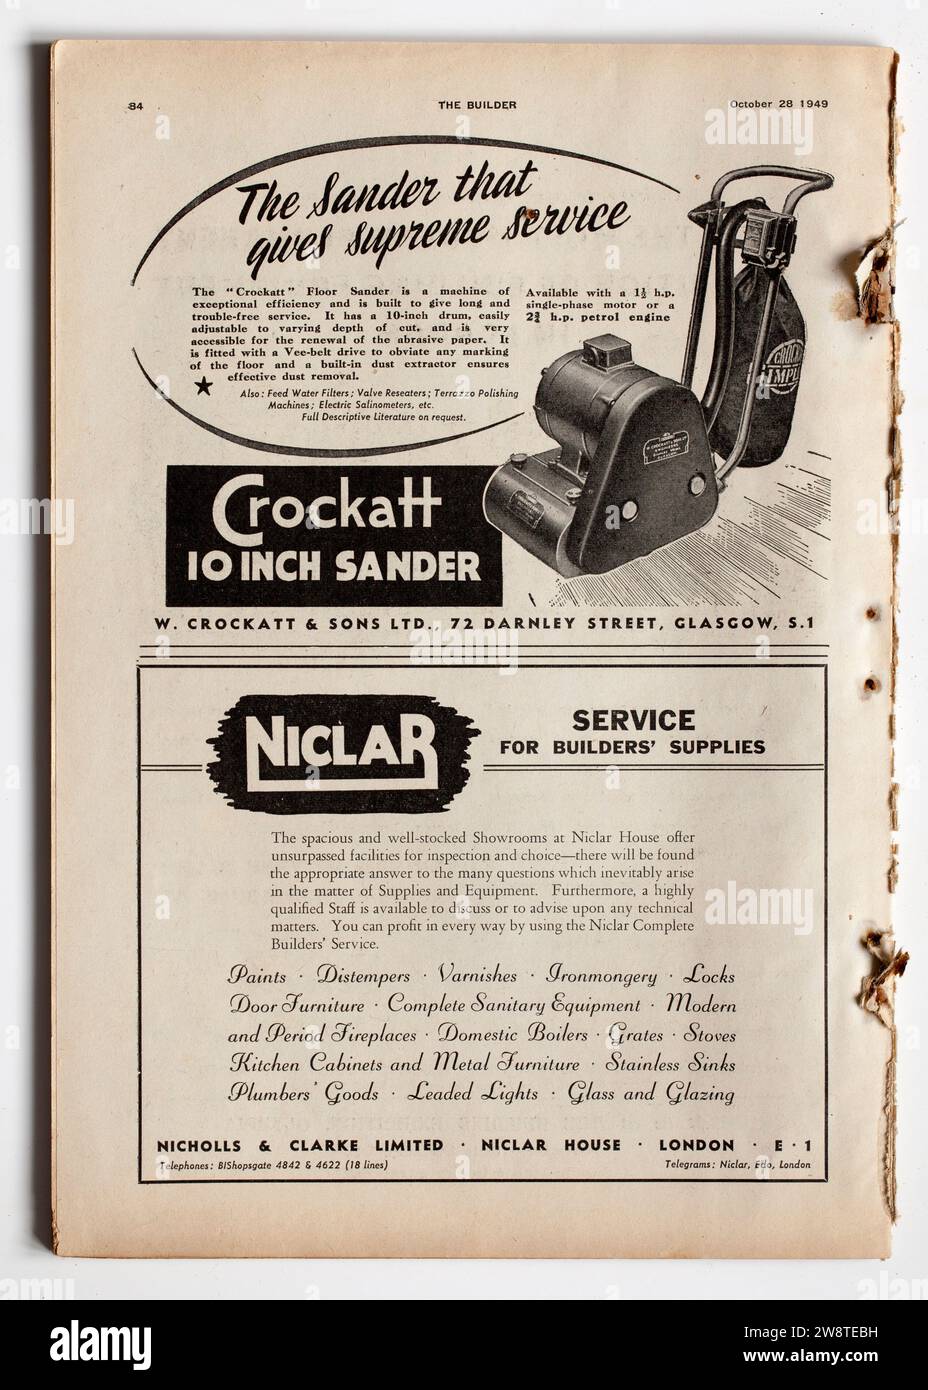 Publicité à partir d'une copie des années 1940 The Builder Magazine - Crockatt Sande r - Niclar Banque D'Images